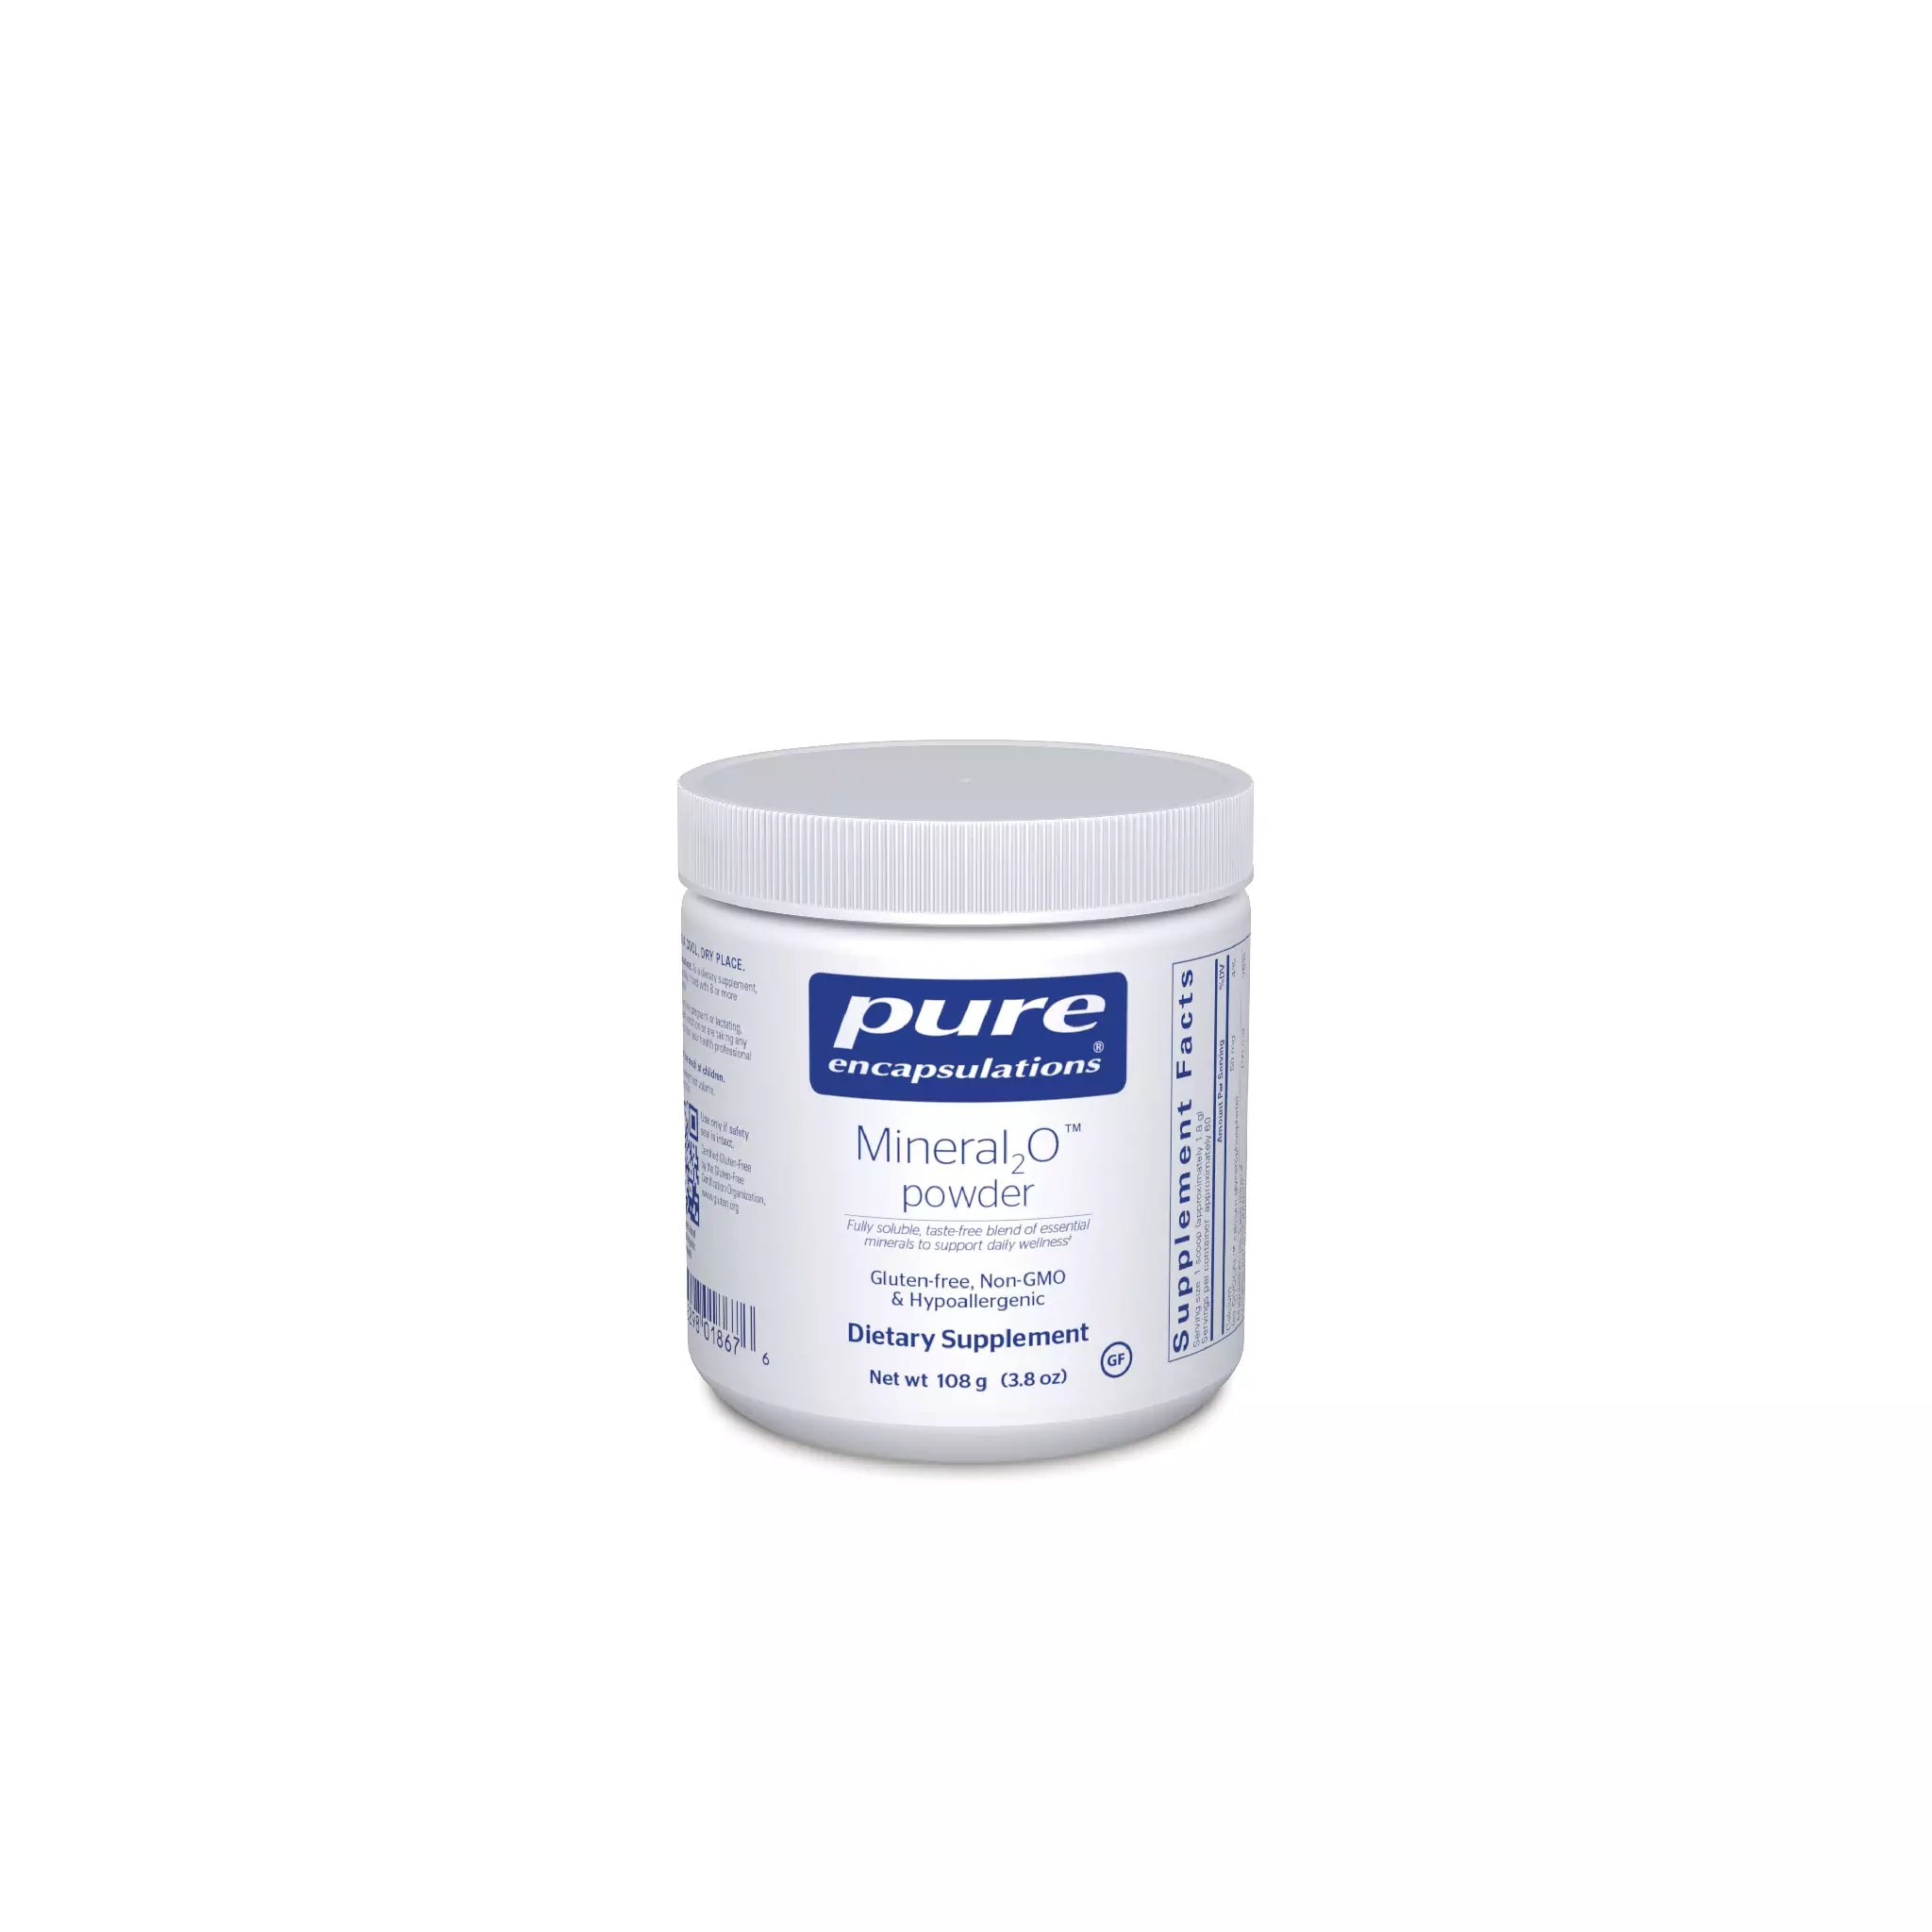 Pure Encapsulations - Mineral2 O powder